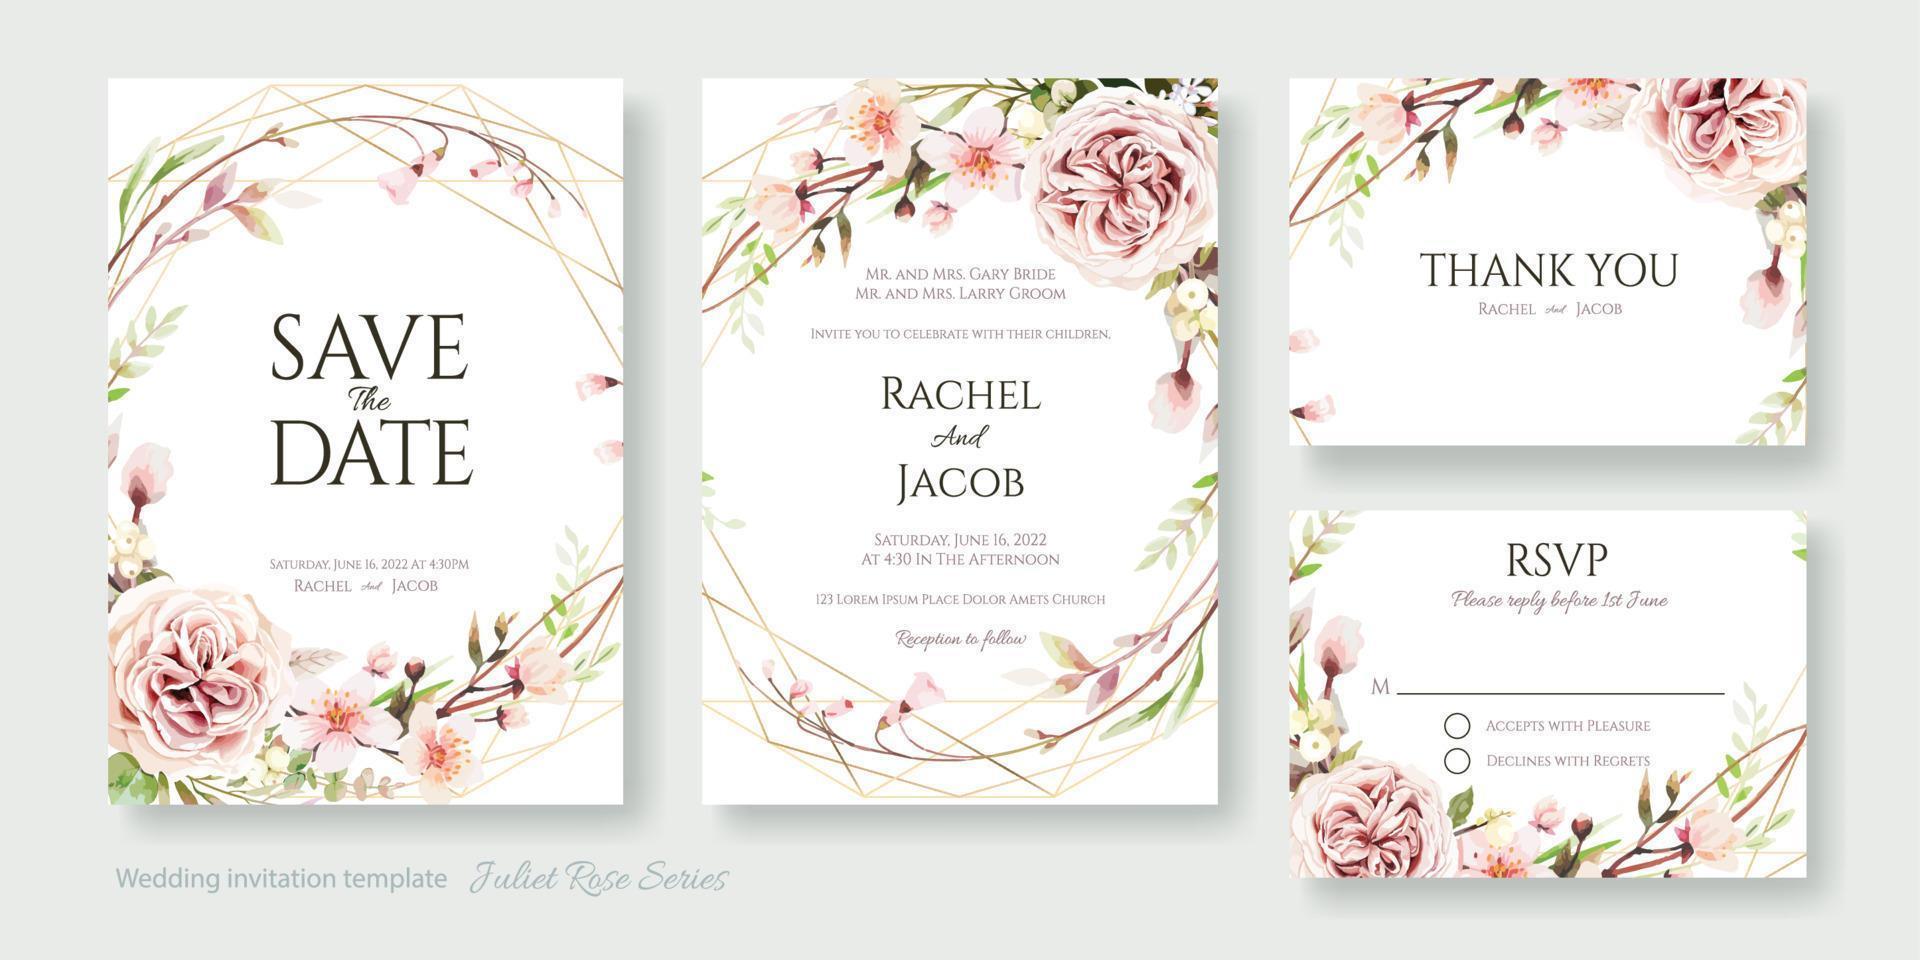 huwelijksuitnodiging, bewaar de datum, dank u, rsvp-kaartontwerpsjabloon. vector. Juliet Rose en kersenbloesem bloemen. vector